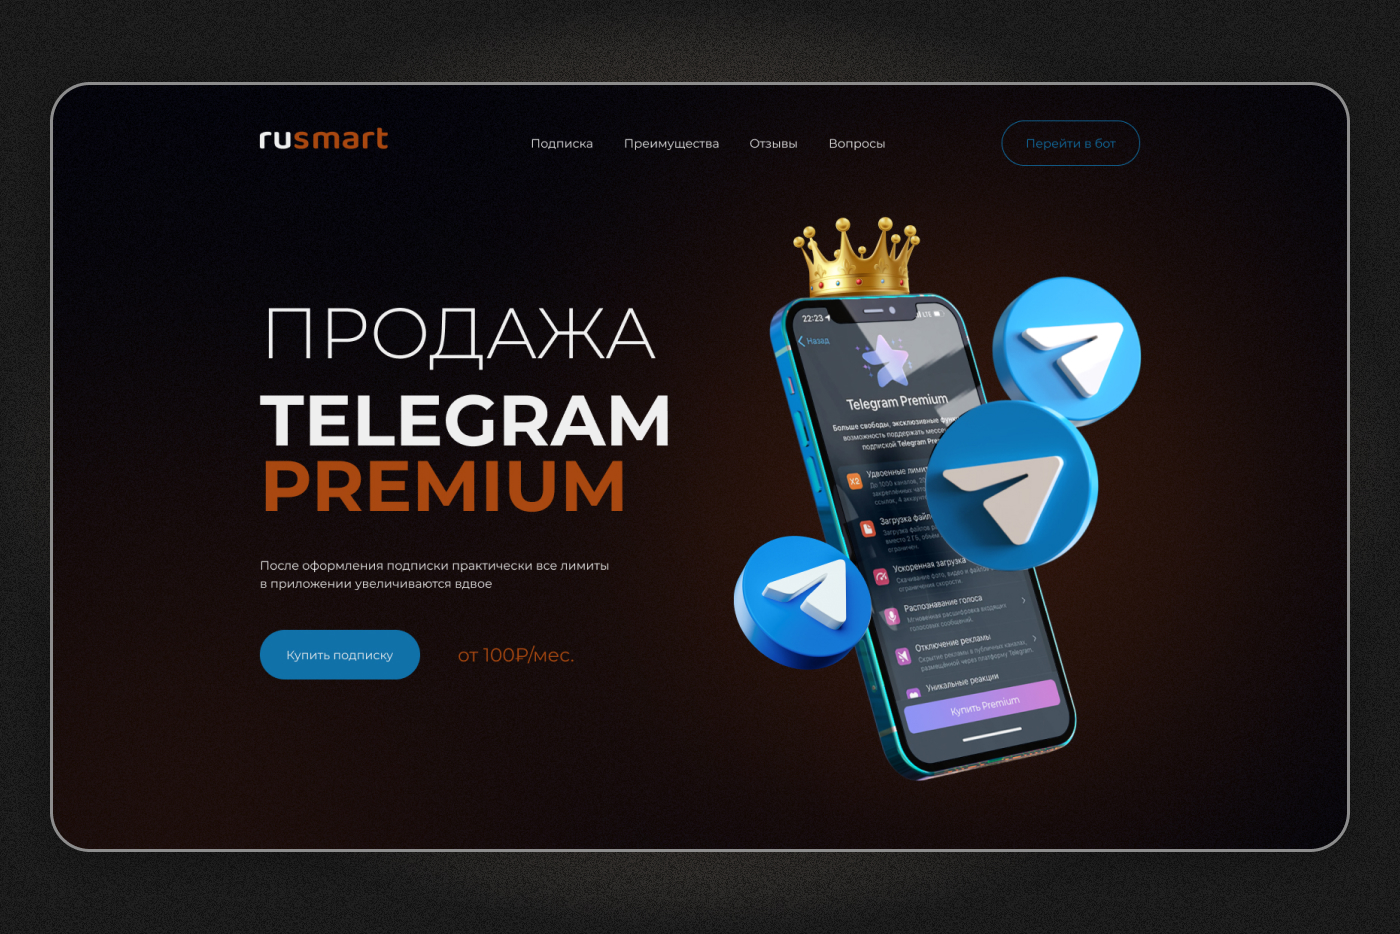 Скачать телеграмм премиум на андроид бесплатно последняя версия на русском языке фото 117